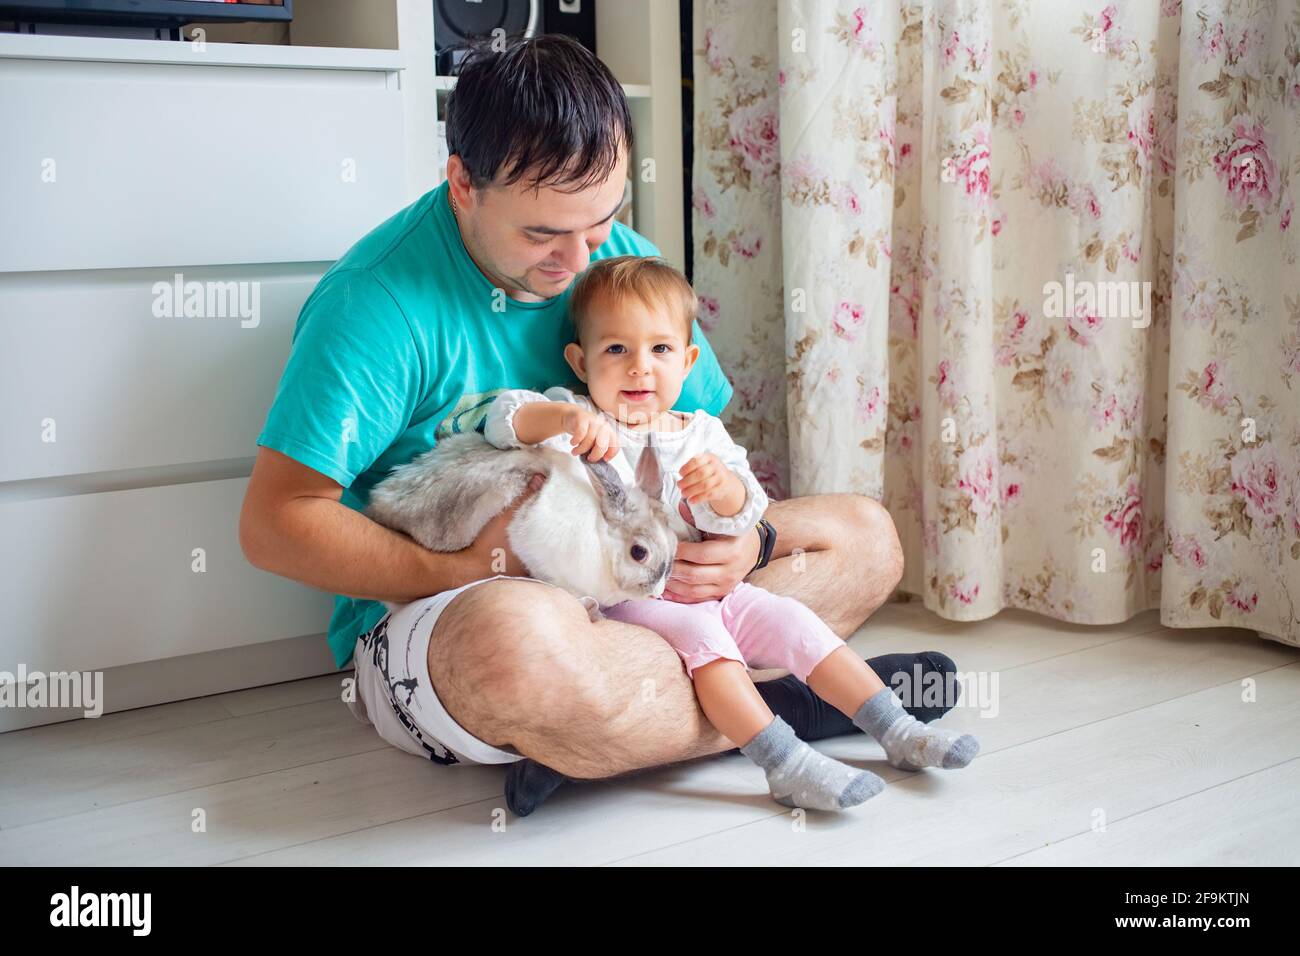 Entzückendes Baby sitzt in den Armen des Vaters und streichelt ein dekoratives Kaninchen. Vater zeigt kleines Kind osterhase. Haustiere in einer Familie mit Kindern Stockfoto